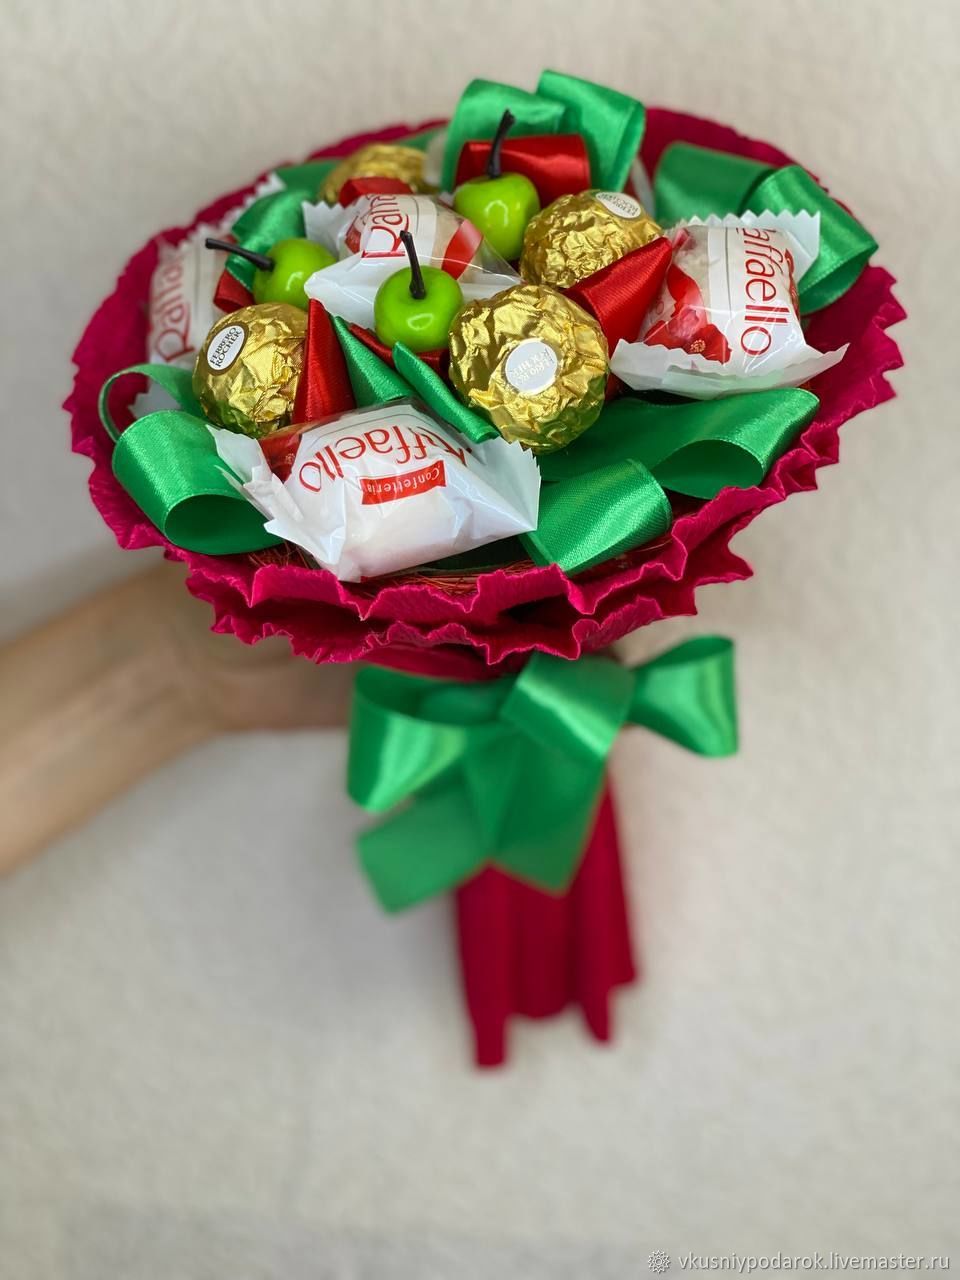 Мастер-класс по букетам из конфет: Ветка орхидеи | Бумажный цветок, Букет из конфет, Тканевые цветы